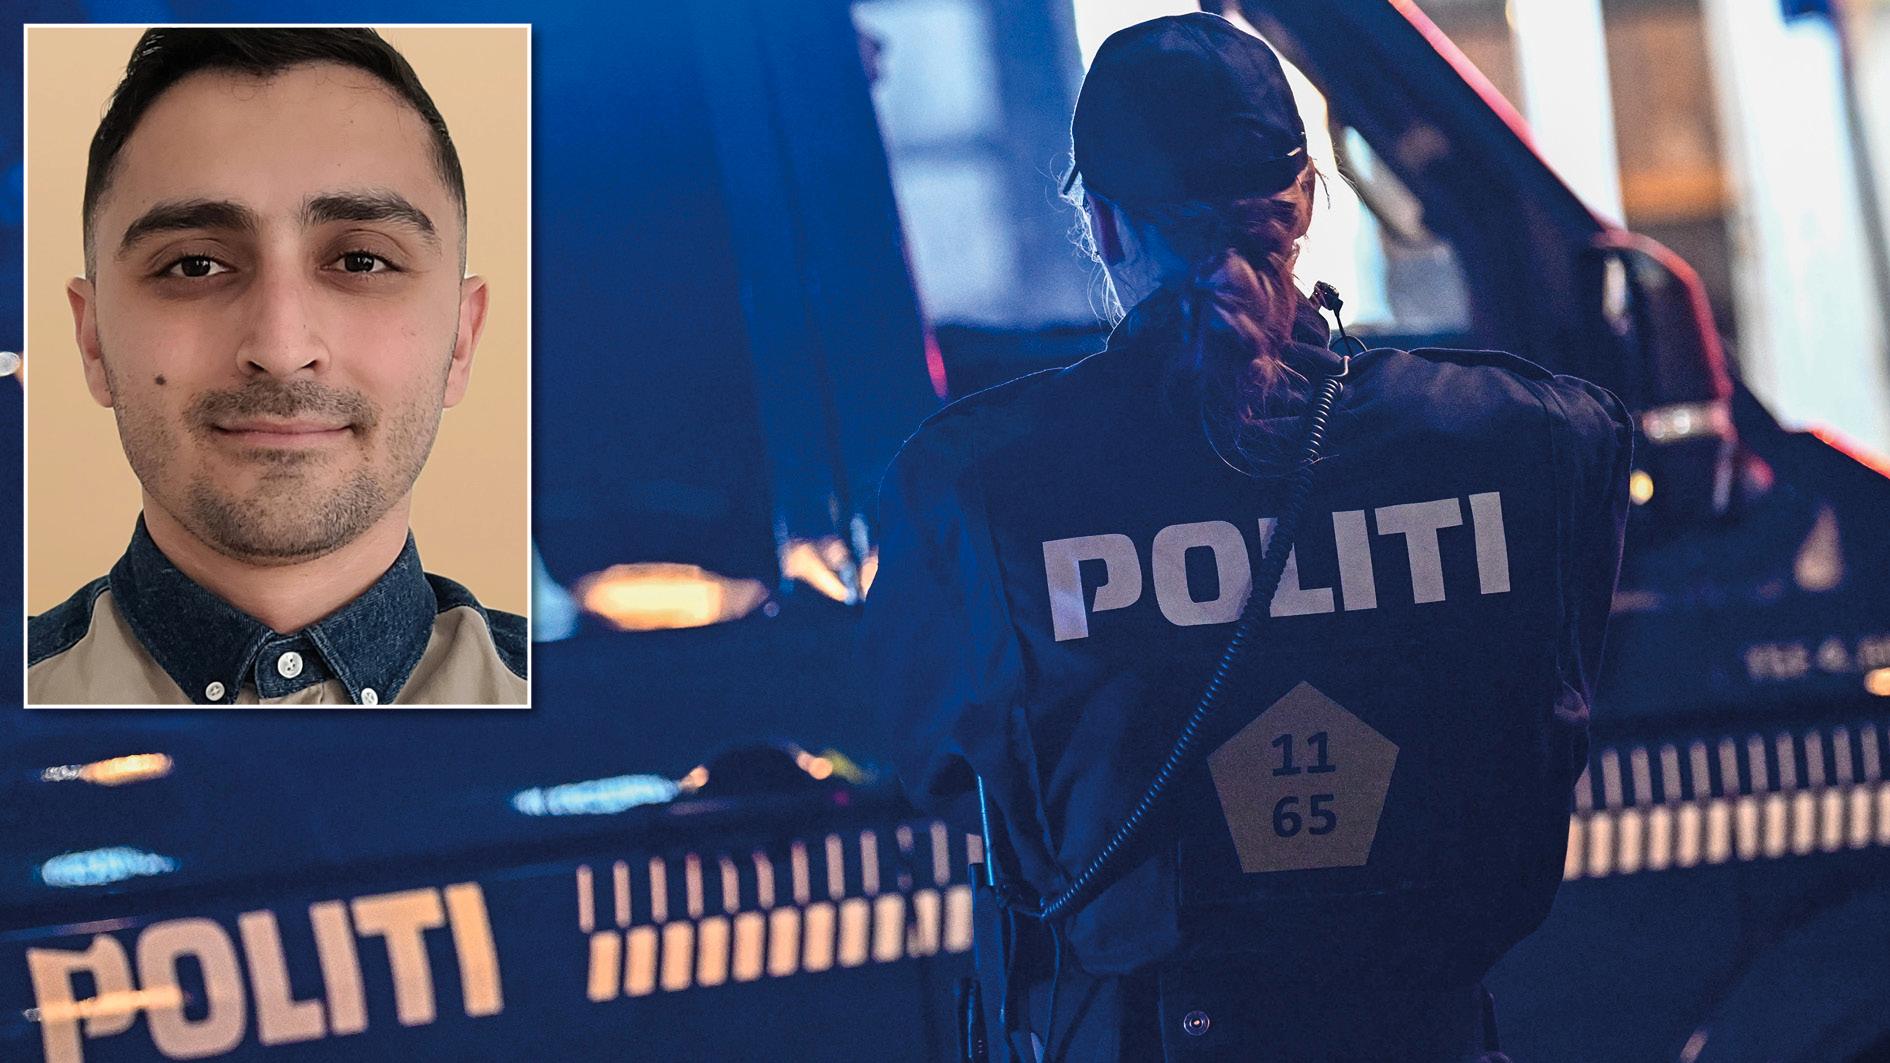 Regeringen och SD är överens om att skärpa lagstiftningen efter dansk modell för att bekämpa gängkriminaliteten. Det kommer inte att hjälpa. De hårdare straffen har inte lett till färre gängmord i Danmark, tvärtom, skriver Iman Azamigilan, dansk gängmedlem 2012–2015.